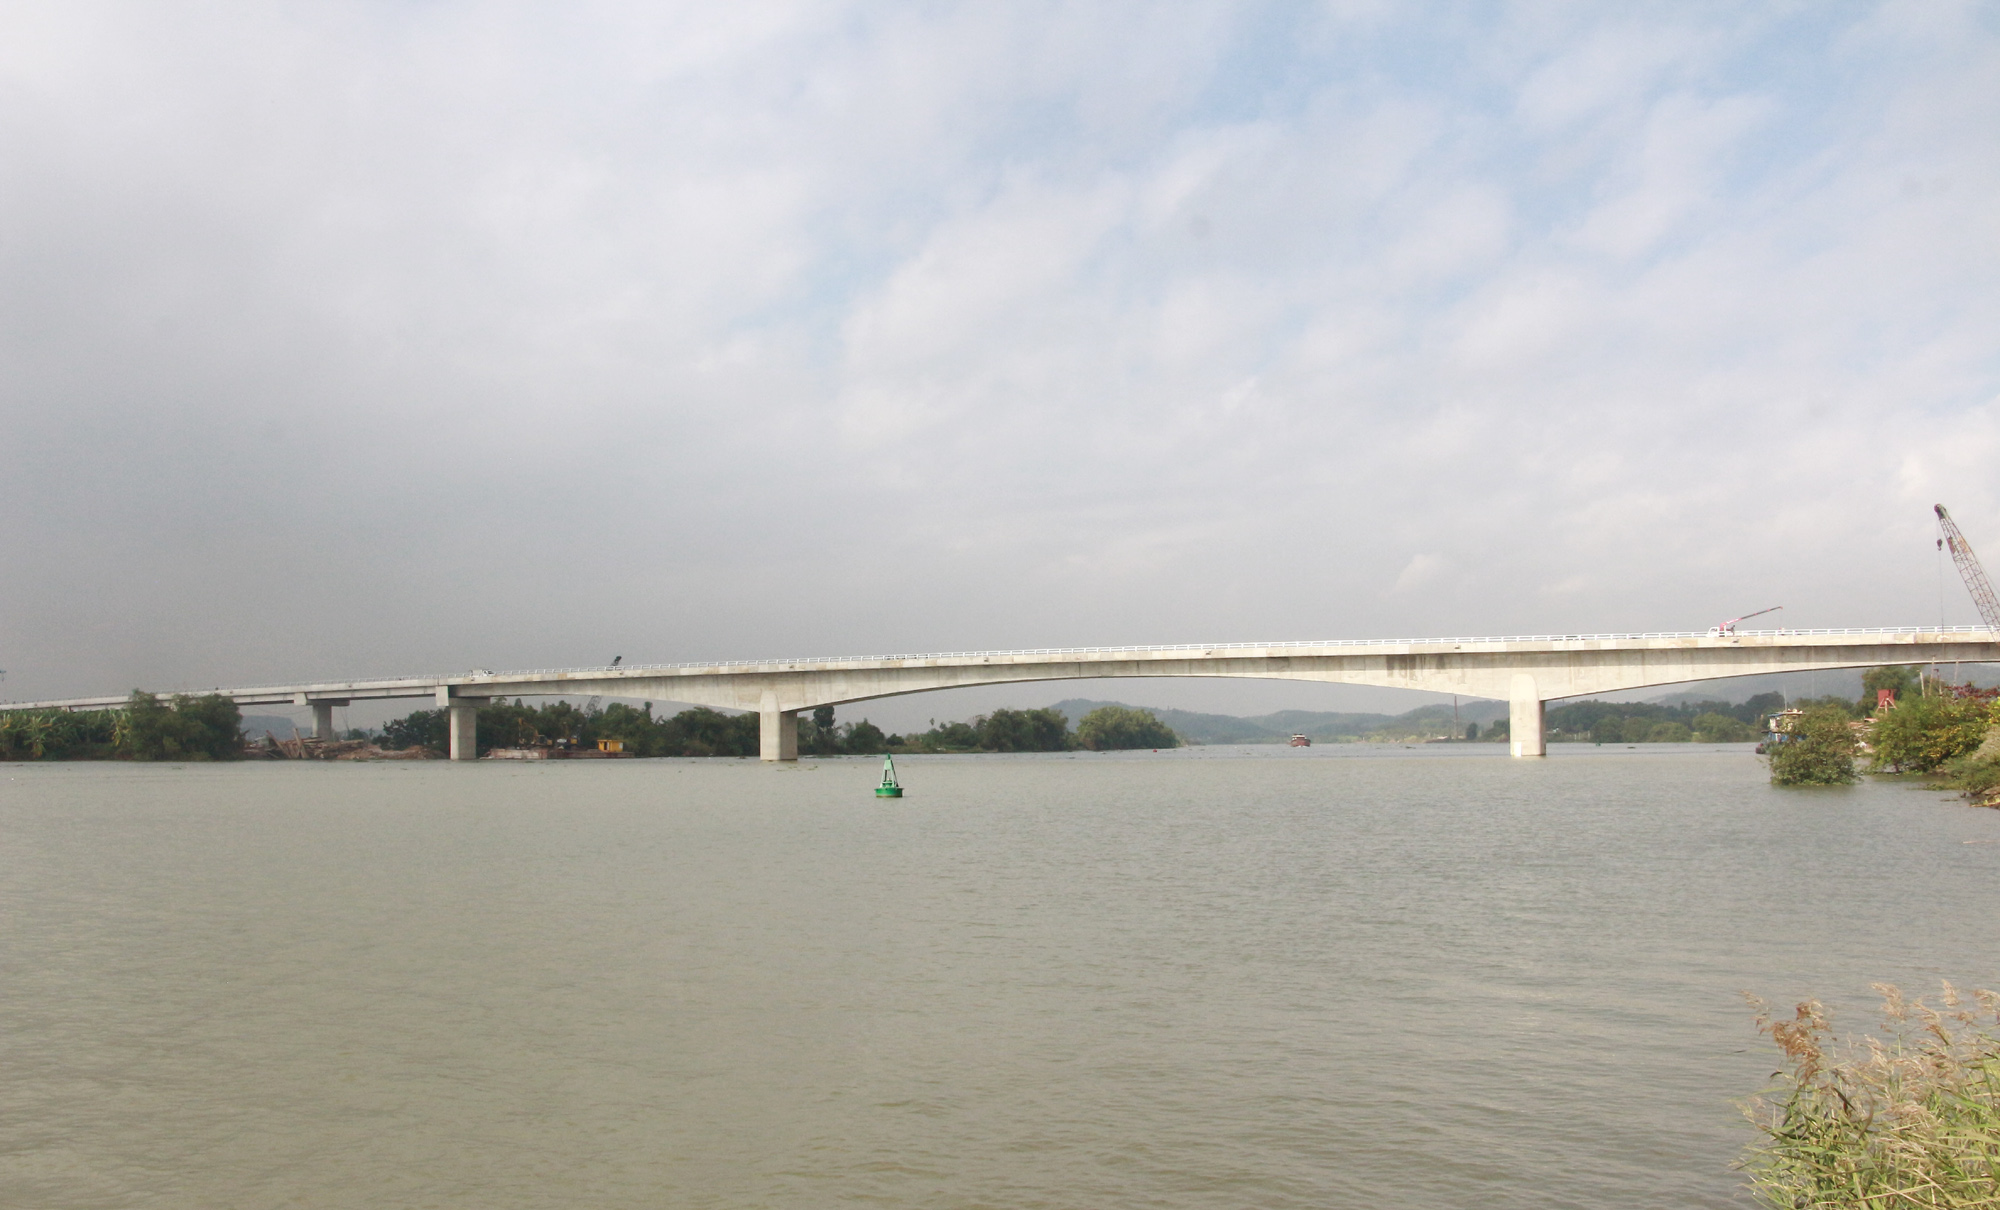 Công trình cầu Triều nối TX Đông Triều với TX Kinh Môn (Hải Dương) được hoàn thành, thông xe kỹ vào ngày 1/1/2020.